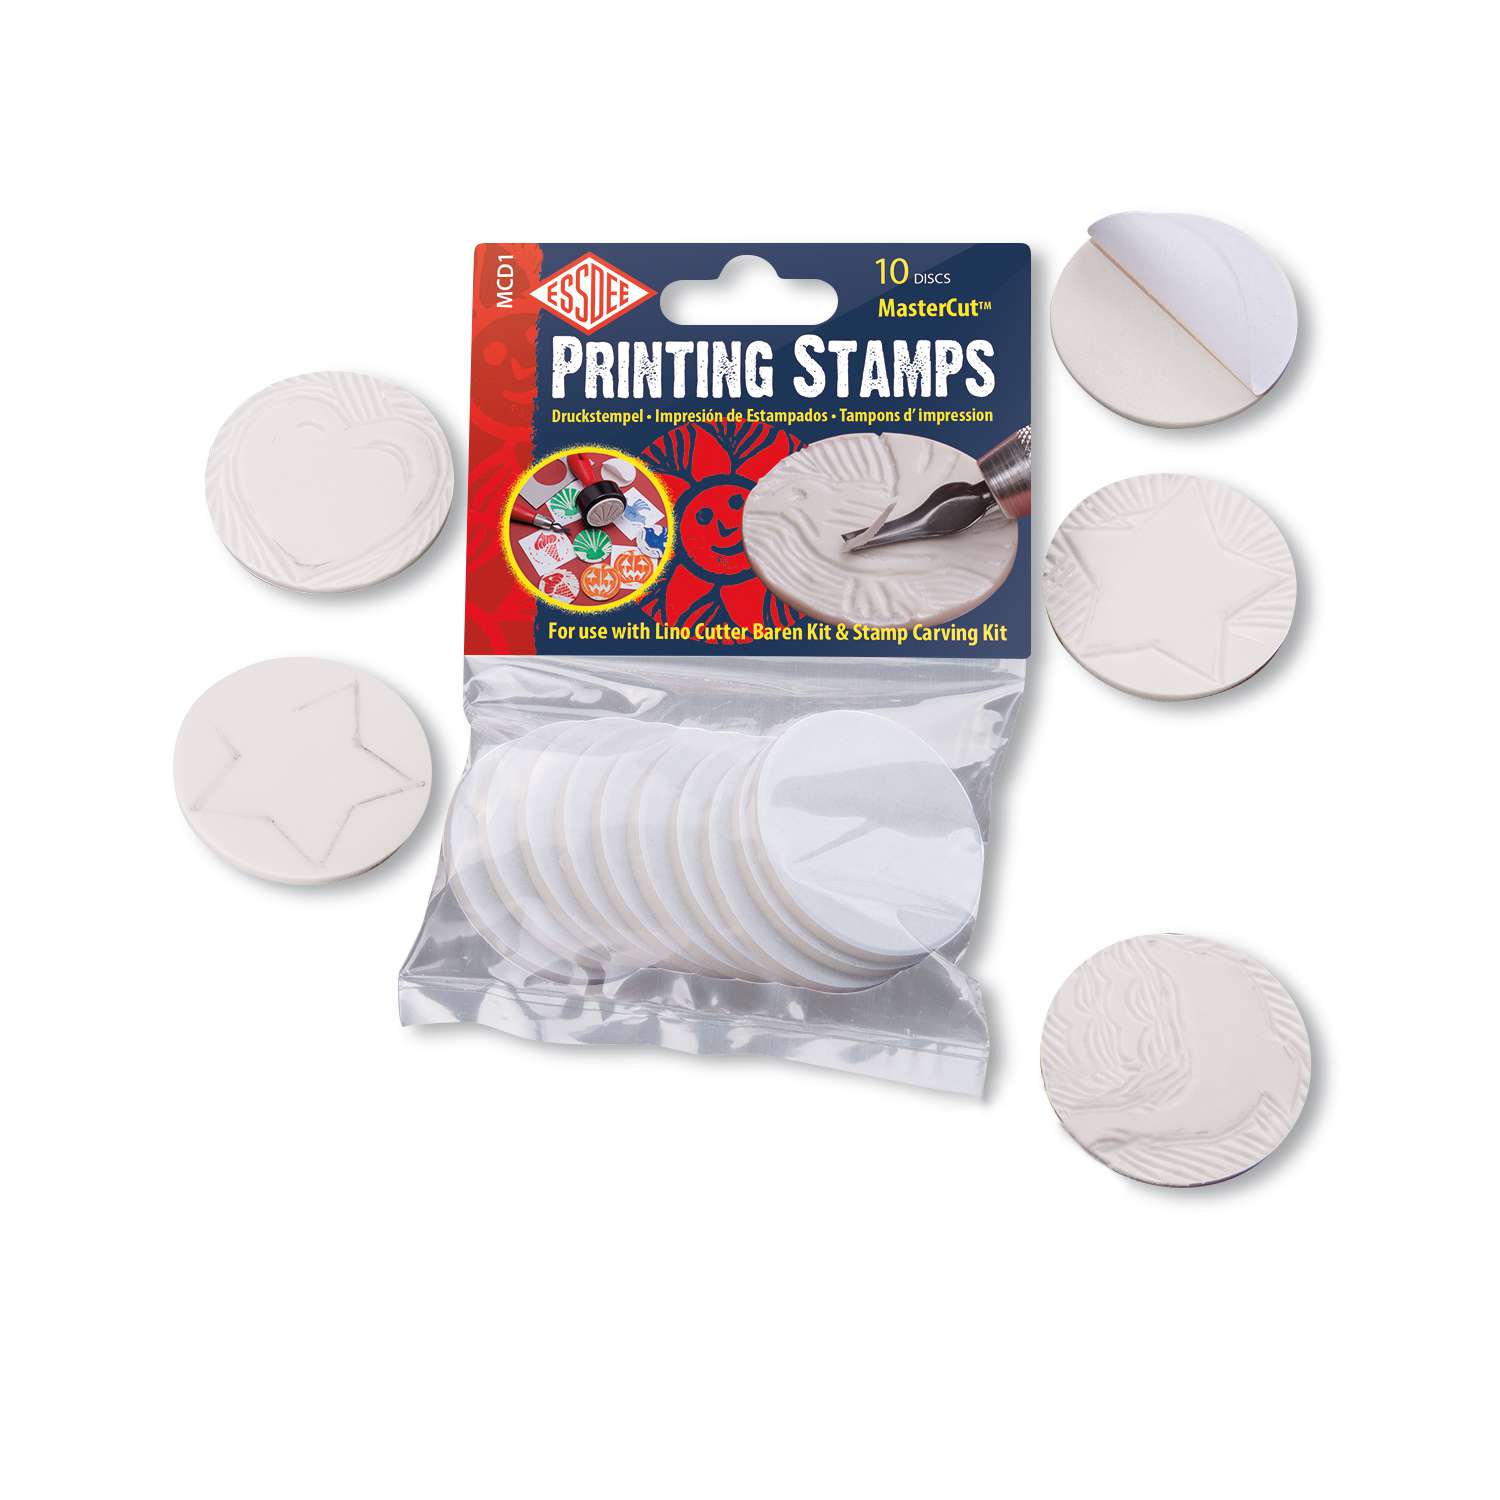 2 x Self-Adhesive MasterCut Printing Stamps 